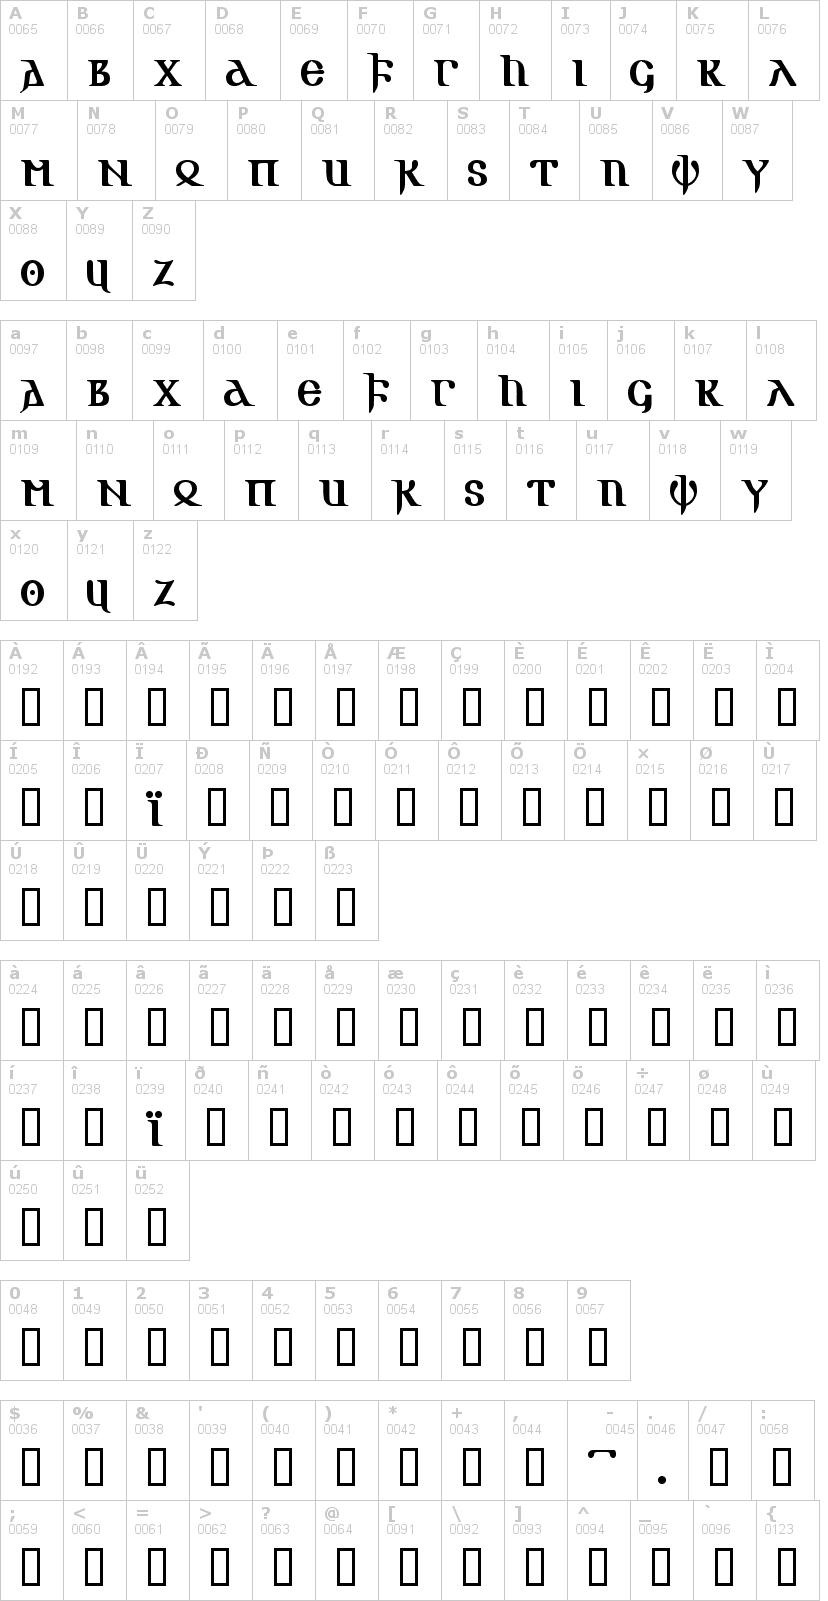 Lettere dell'alfabeto del font gotic-aoe con le quali è possibile realizzare adesivi prespaziati